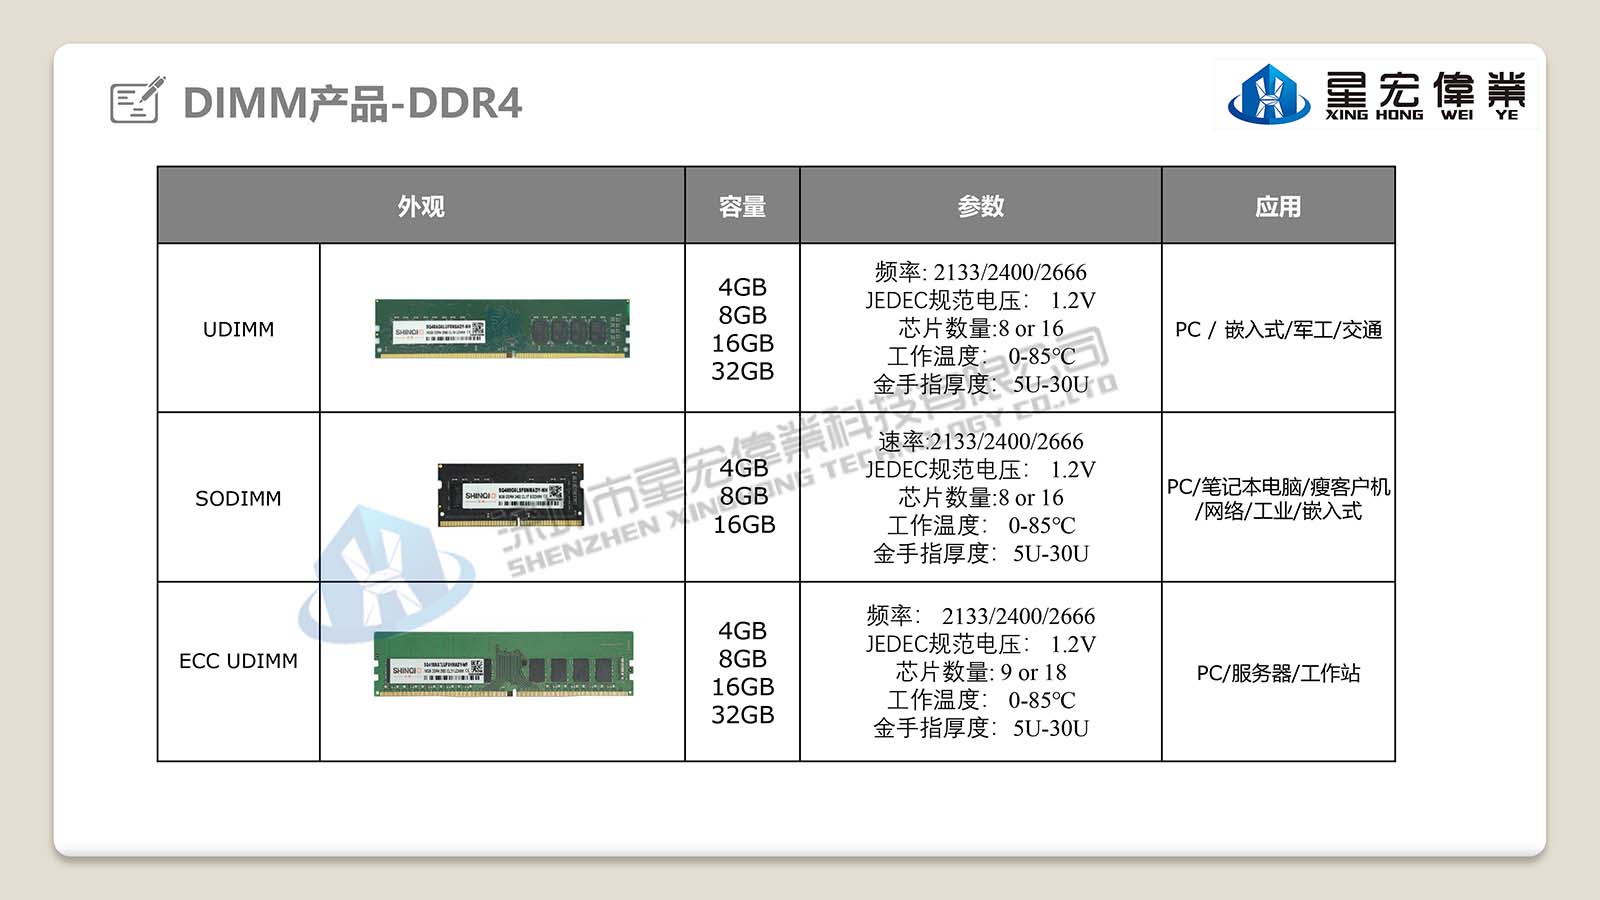 【星宏伟业】SODIMM-SHINQIO 网络/嵌入式内存DDR3 2G 4G 8G 工业内存